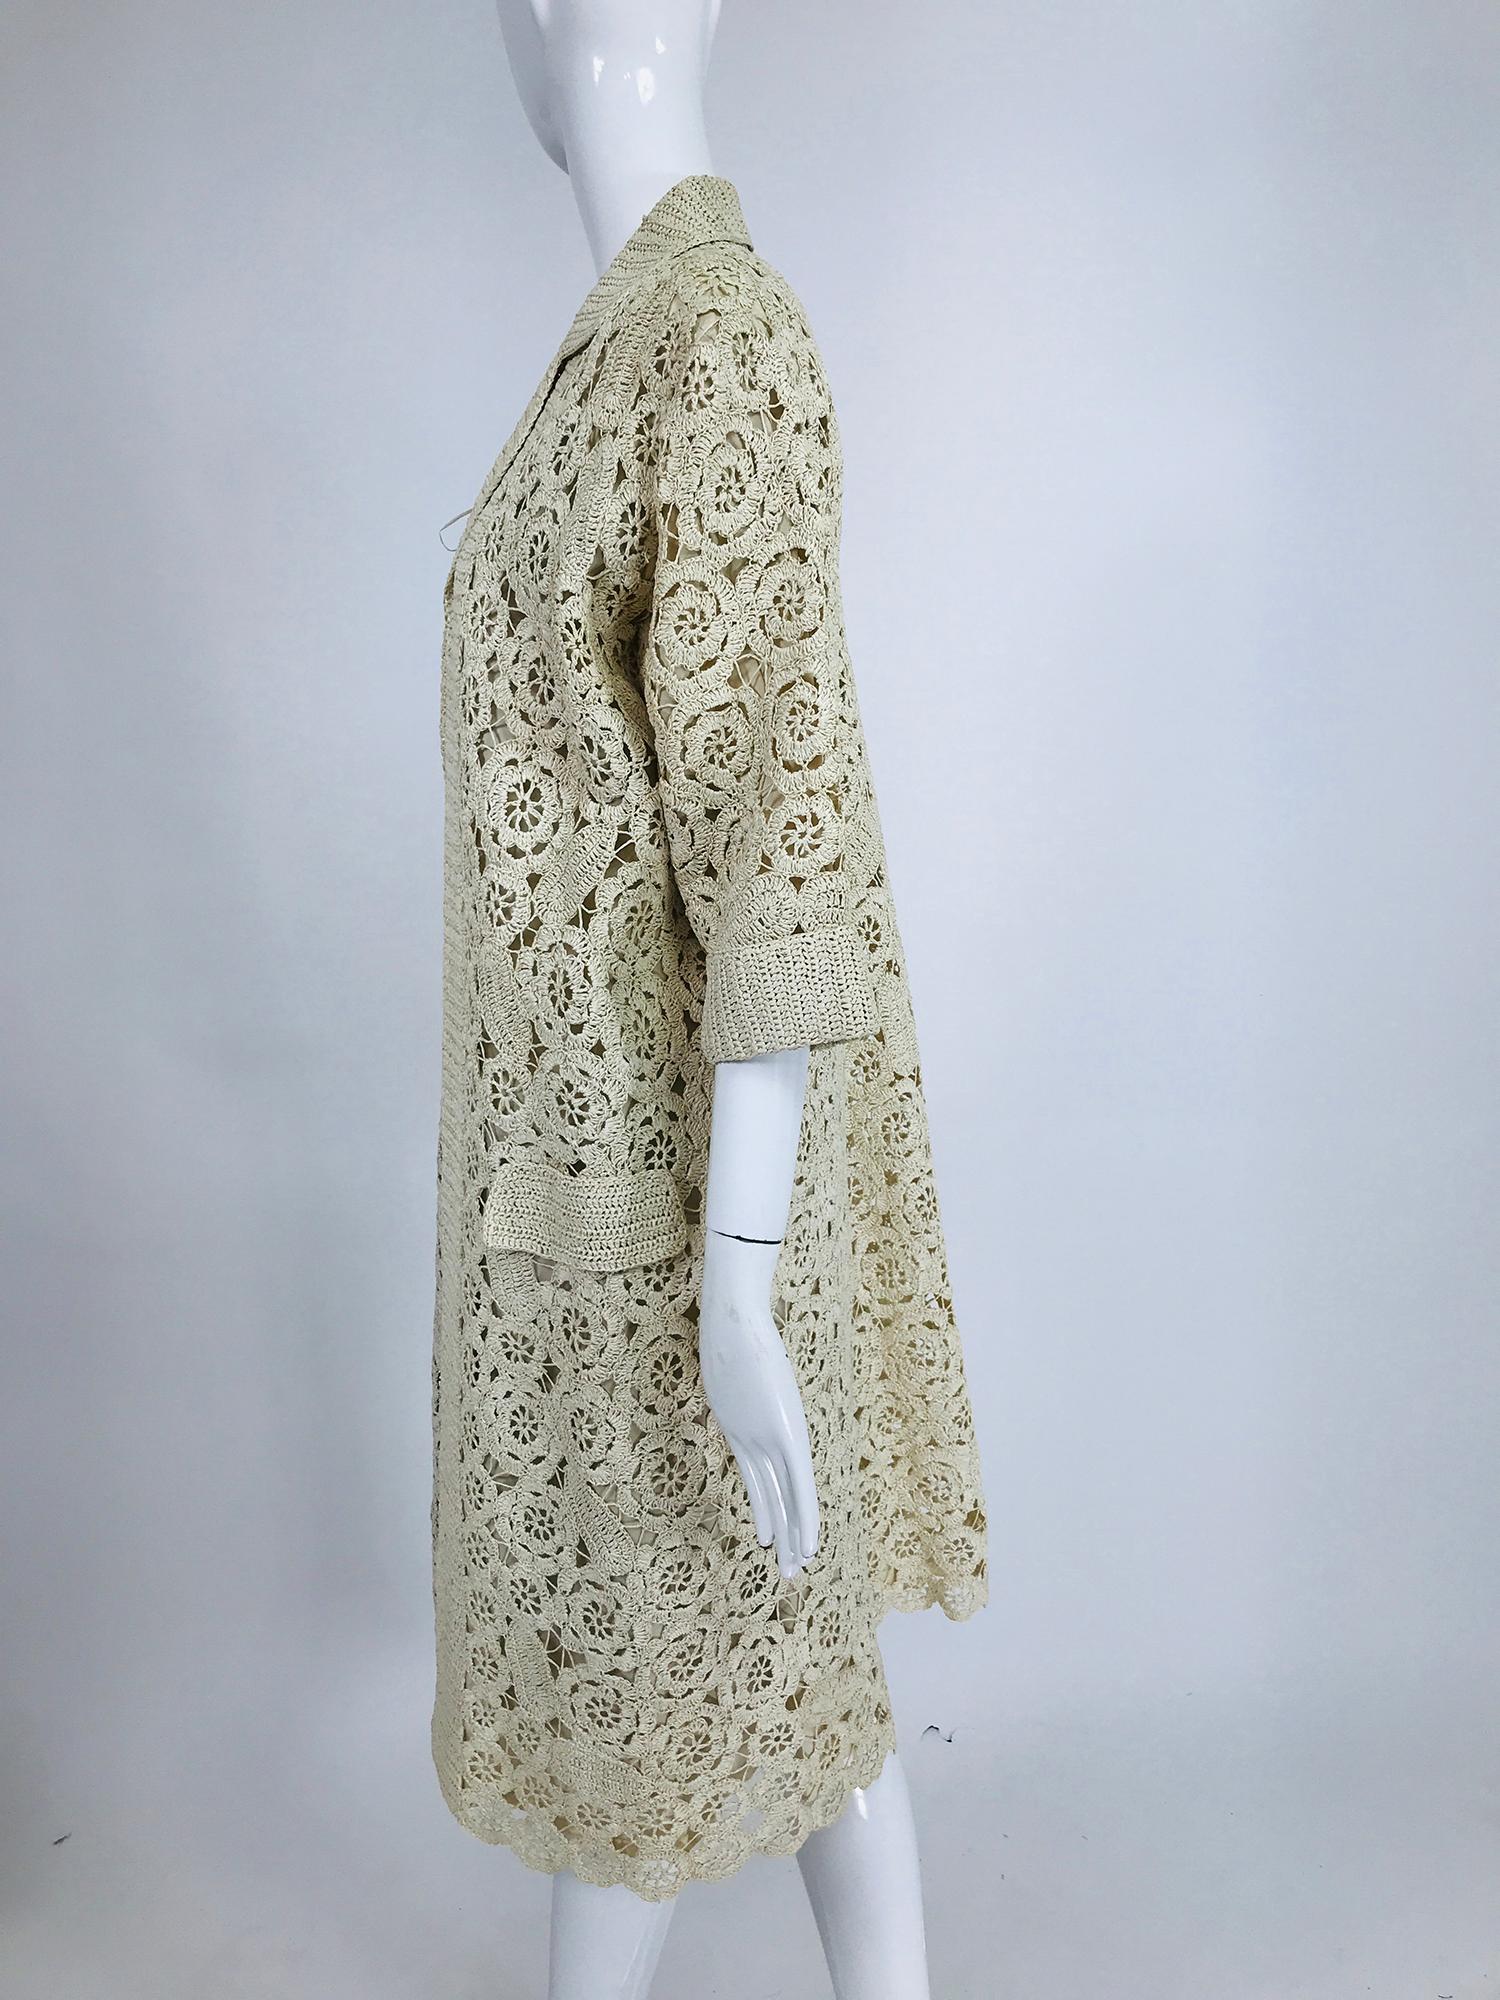 Women's Creazioni Paoli Firenze Coat & Dress Set of Cream Crocheted Raffia 1950s 